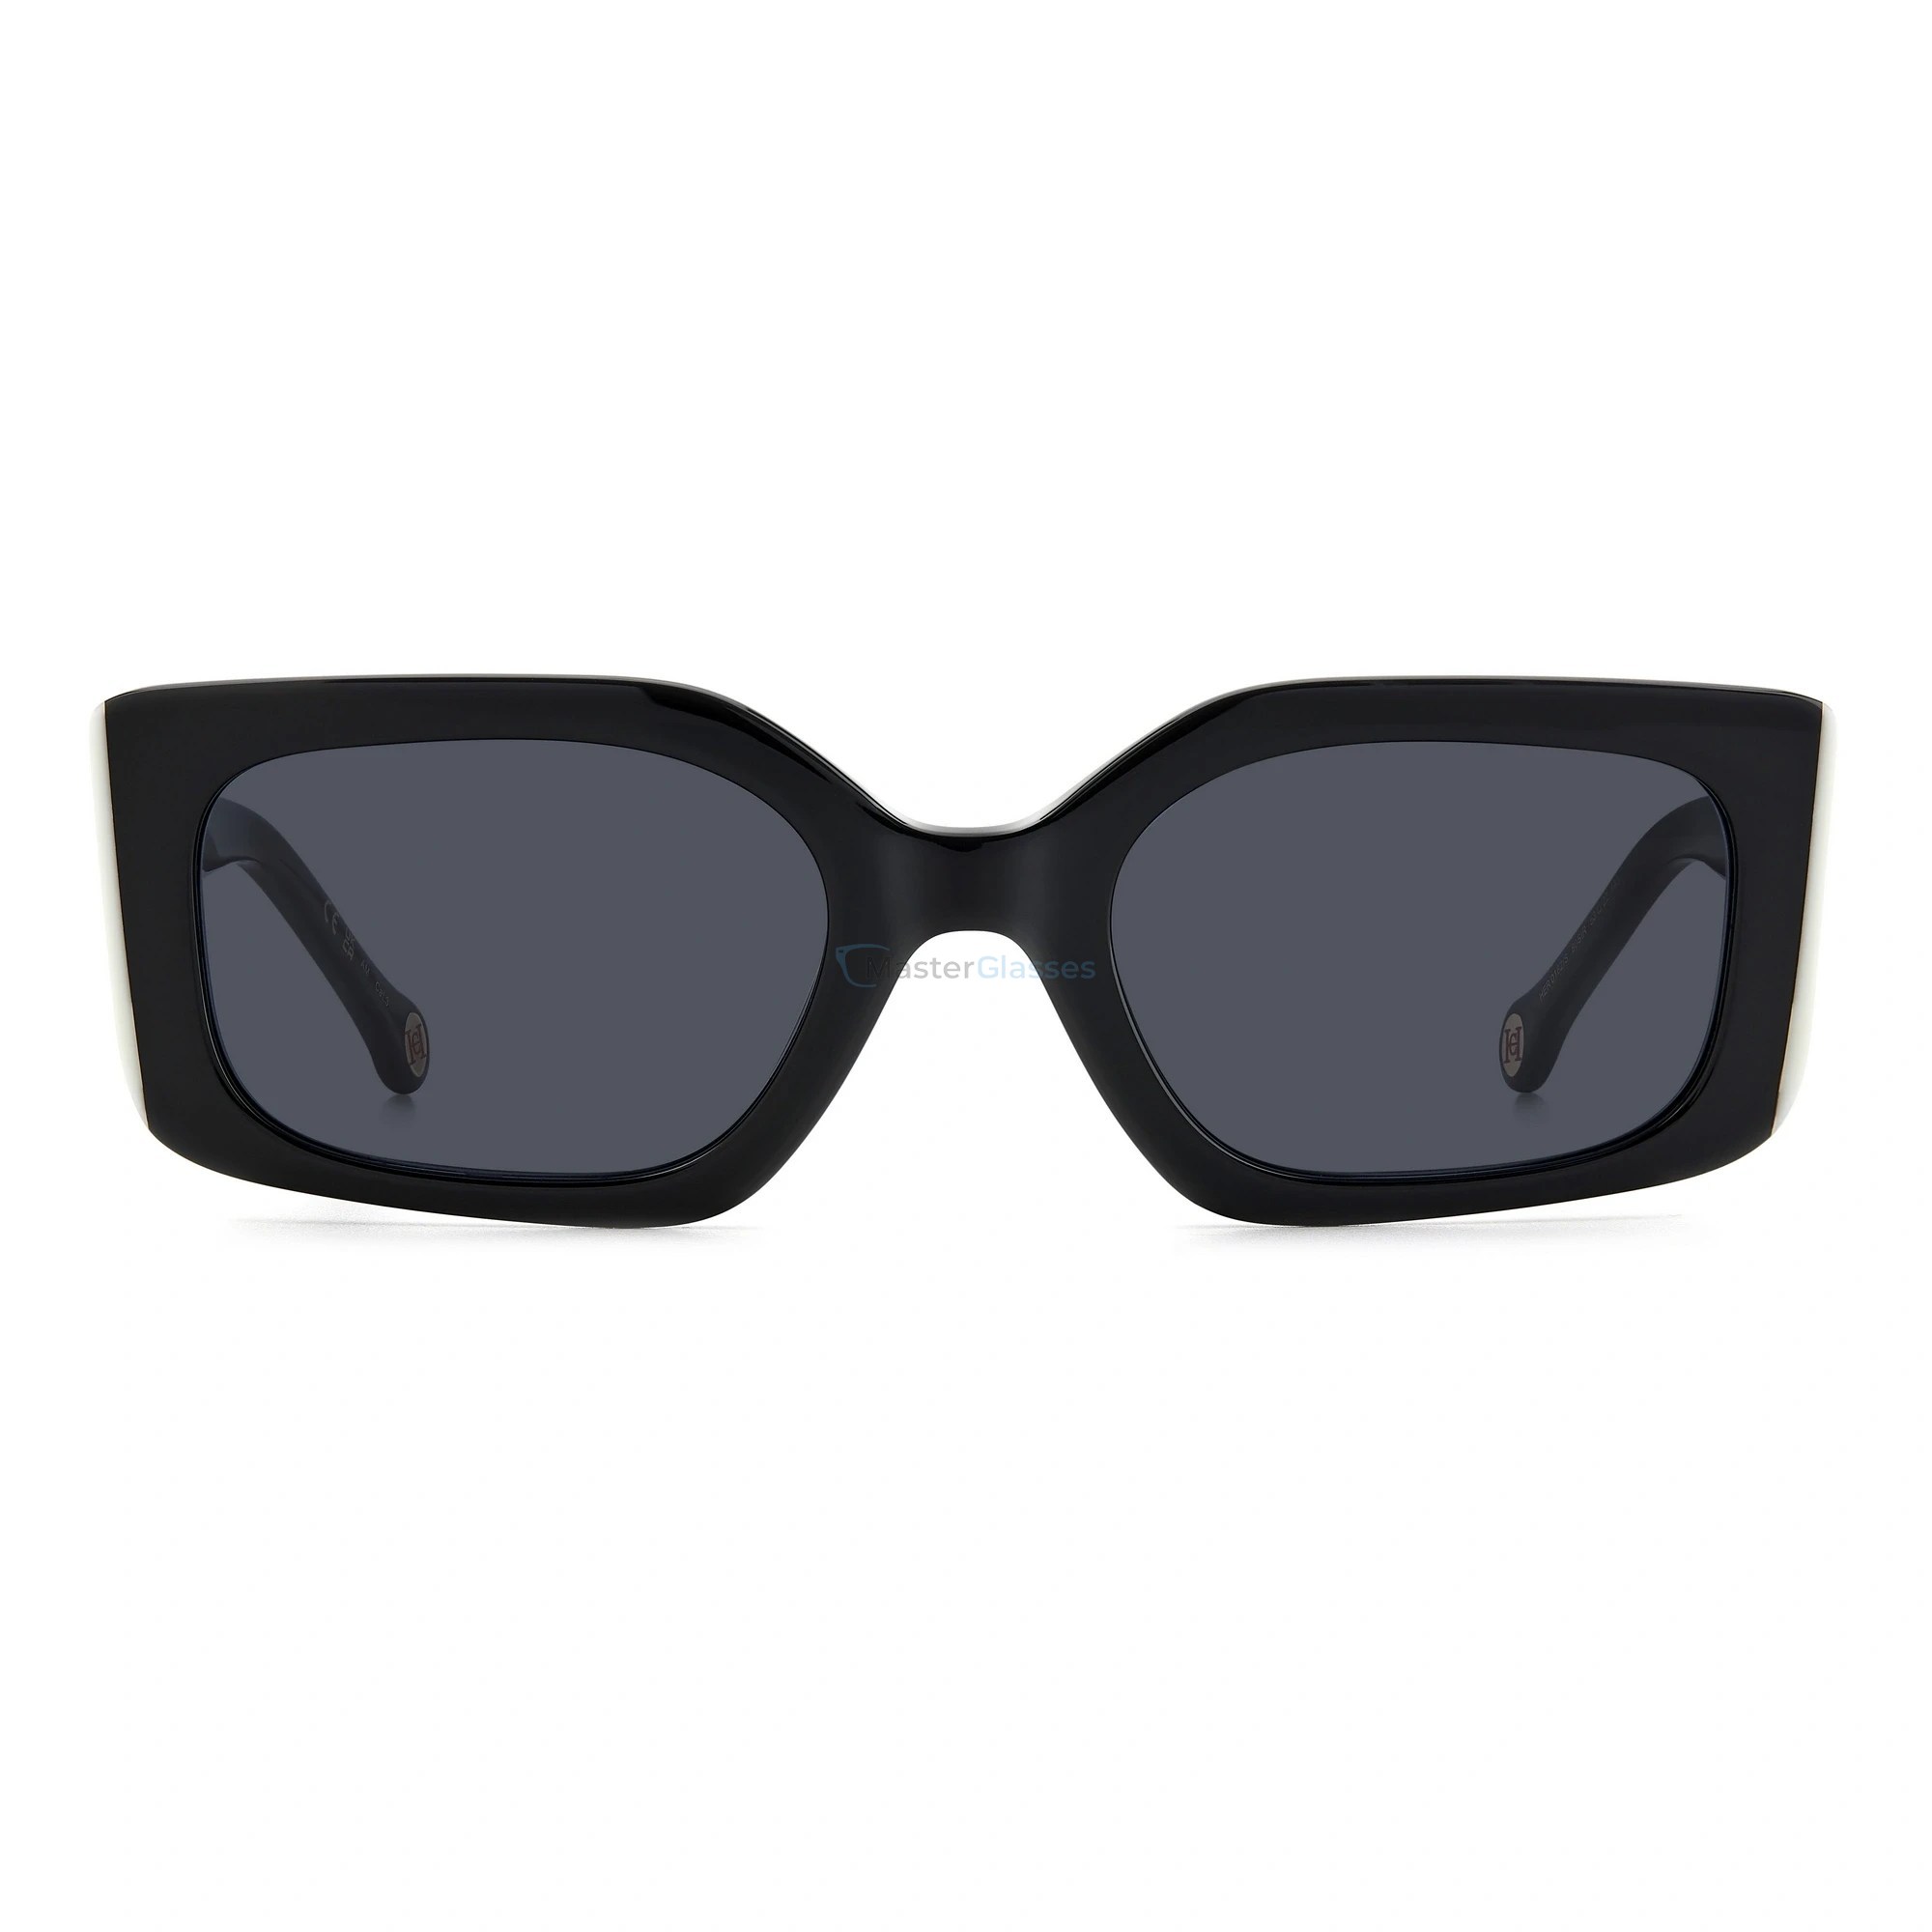 Модные черные очки. Prada 17ws 1ab5s0 Black солнцезащитные. Prada PR 17ws. Мужские очки Garrett Leight California Optical. Солнцезащитные очки Prada PR 17ws 1ab5s0.